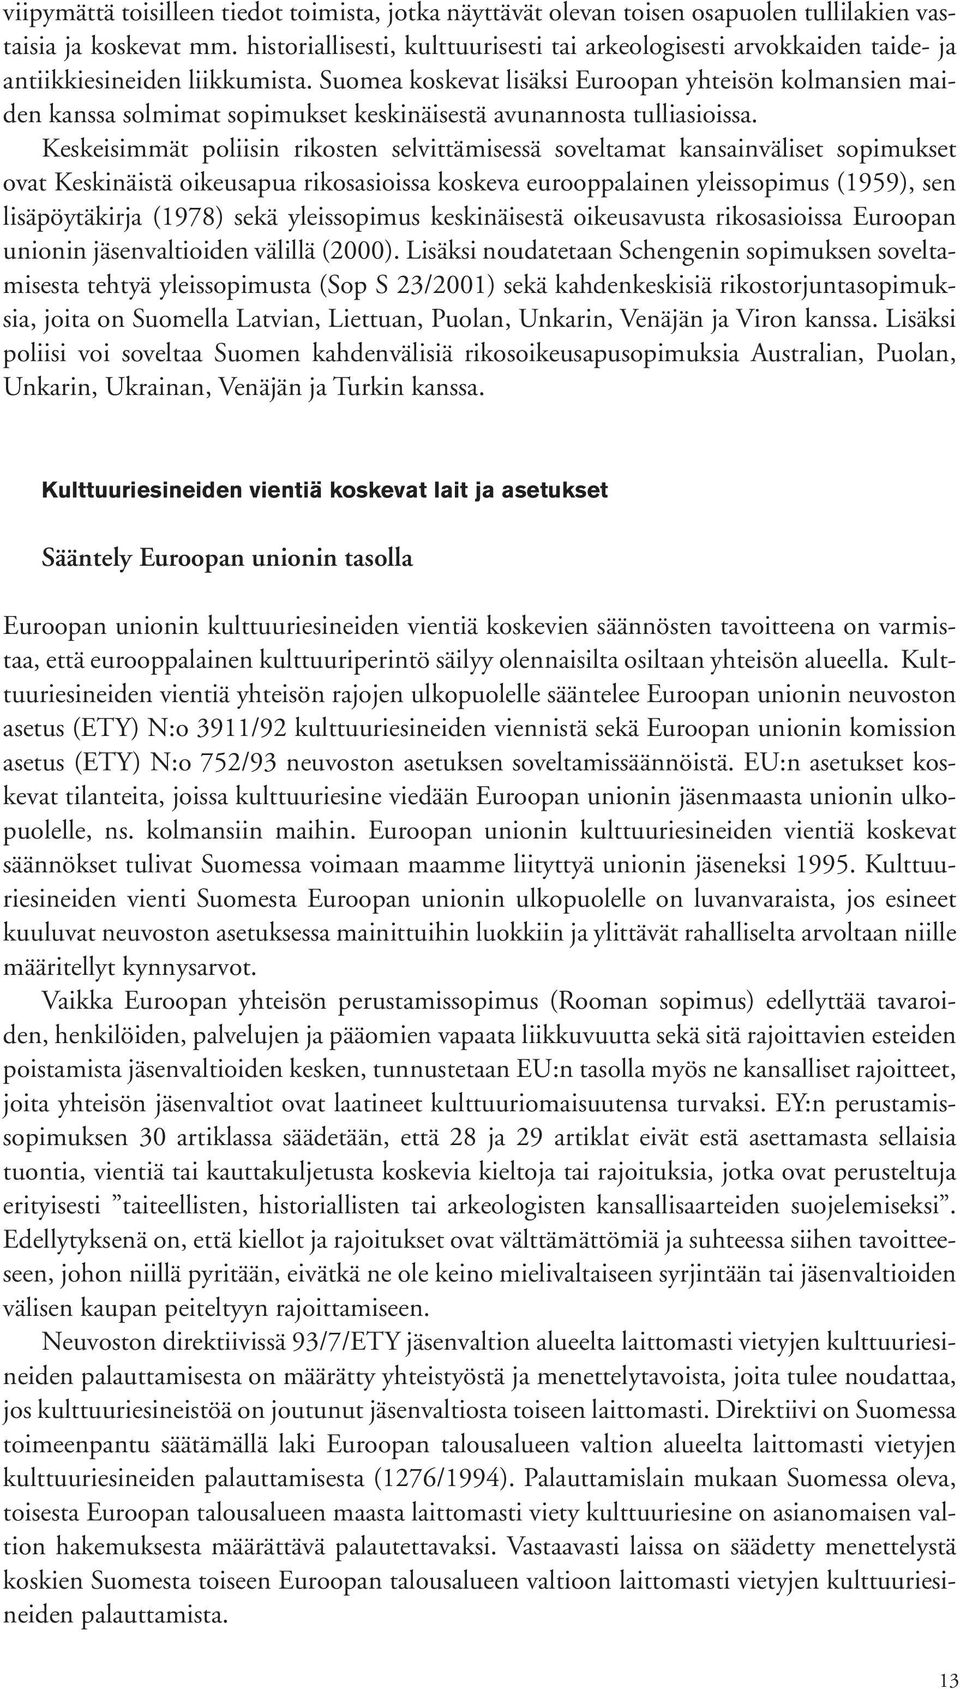 Suomea koskevat lisäksi Euroopan yhteisön kolmansien maiden kanssa solmimat sopimukset keskinäisestä avunannosta tulliasioissa.